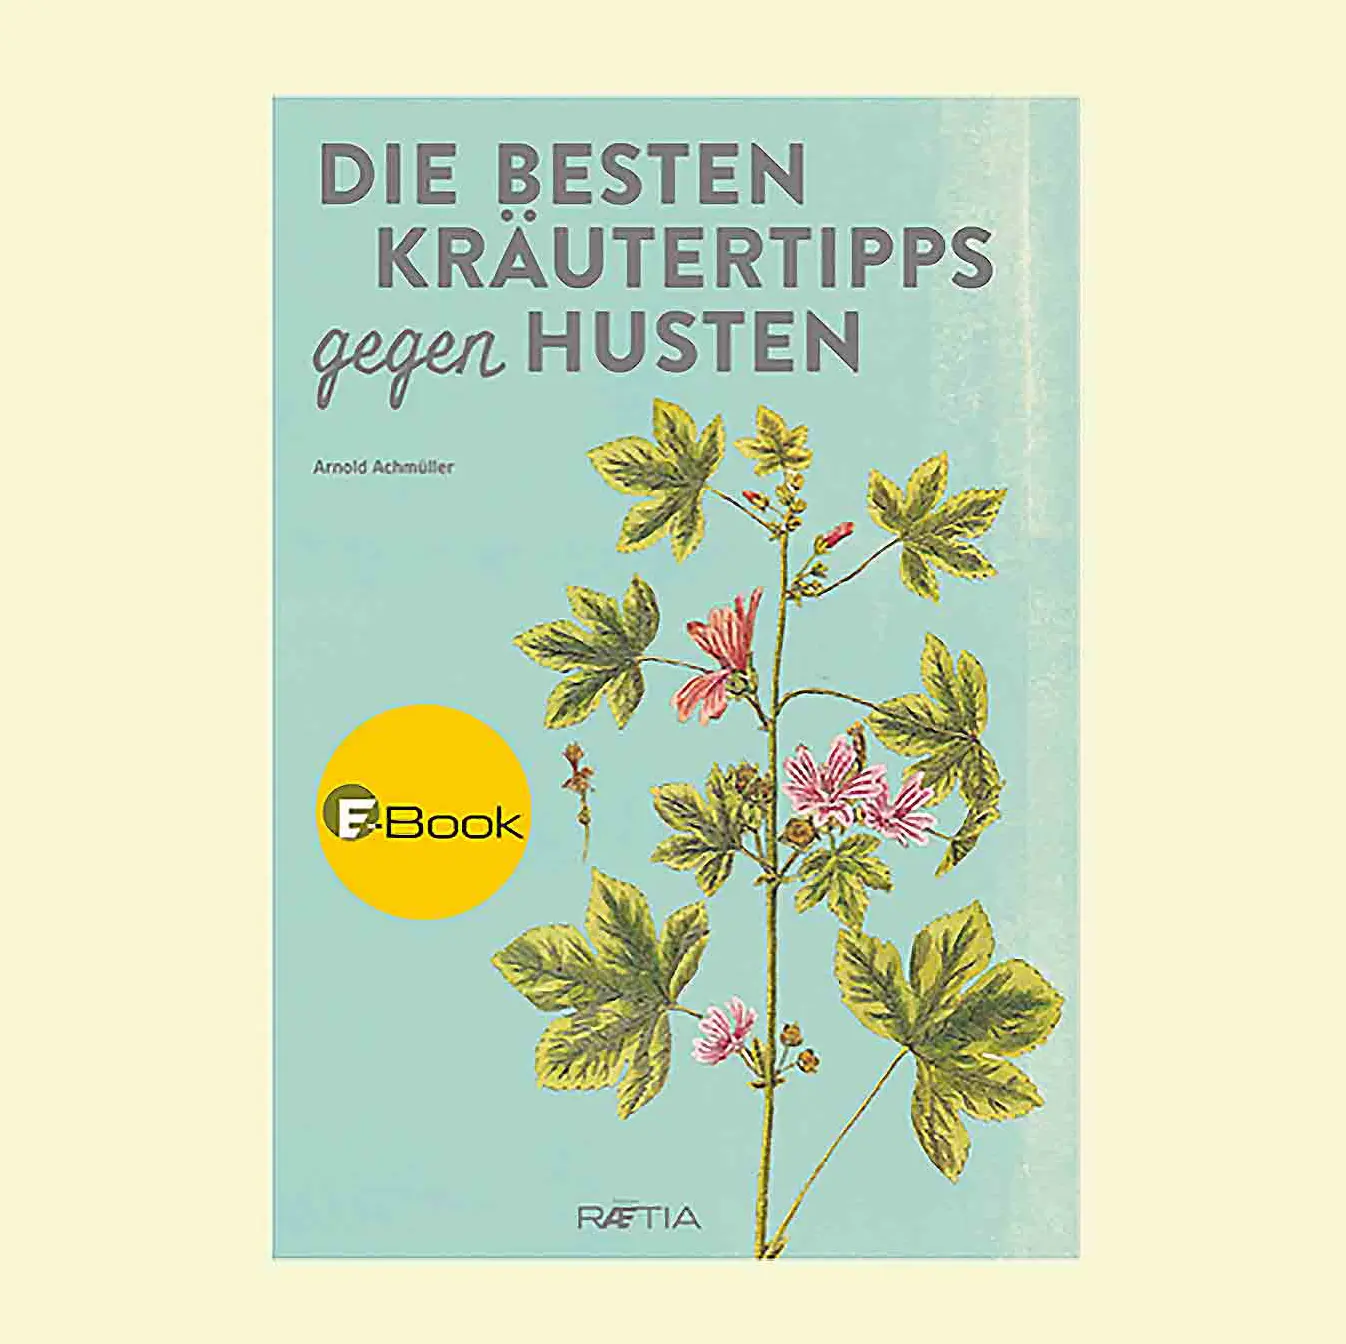 Buchcover des Ebooks "Die besten Kräutertipps gegen Husten" von Arnold Achmüller.